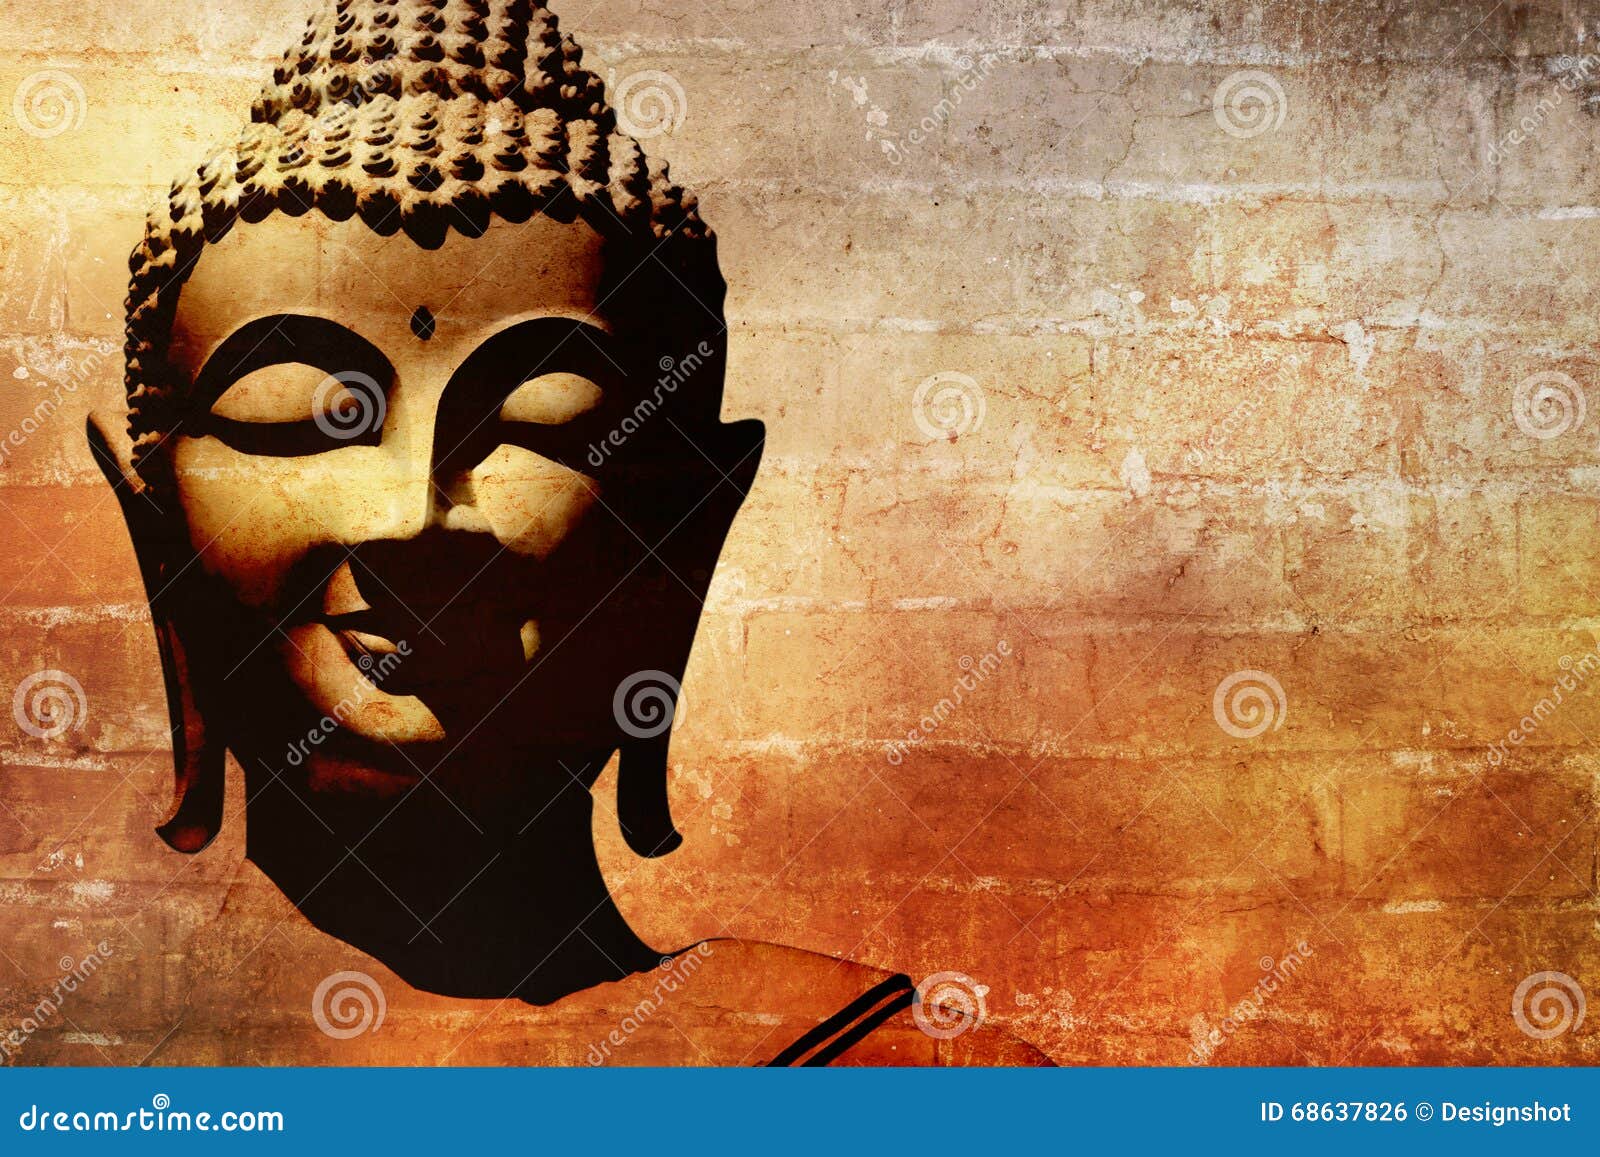 buddha face background